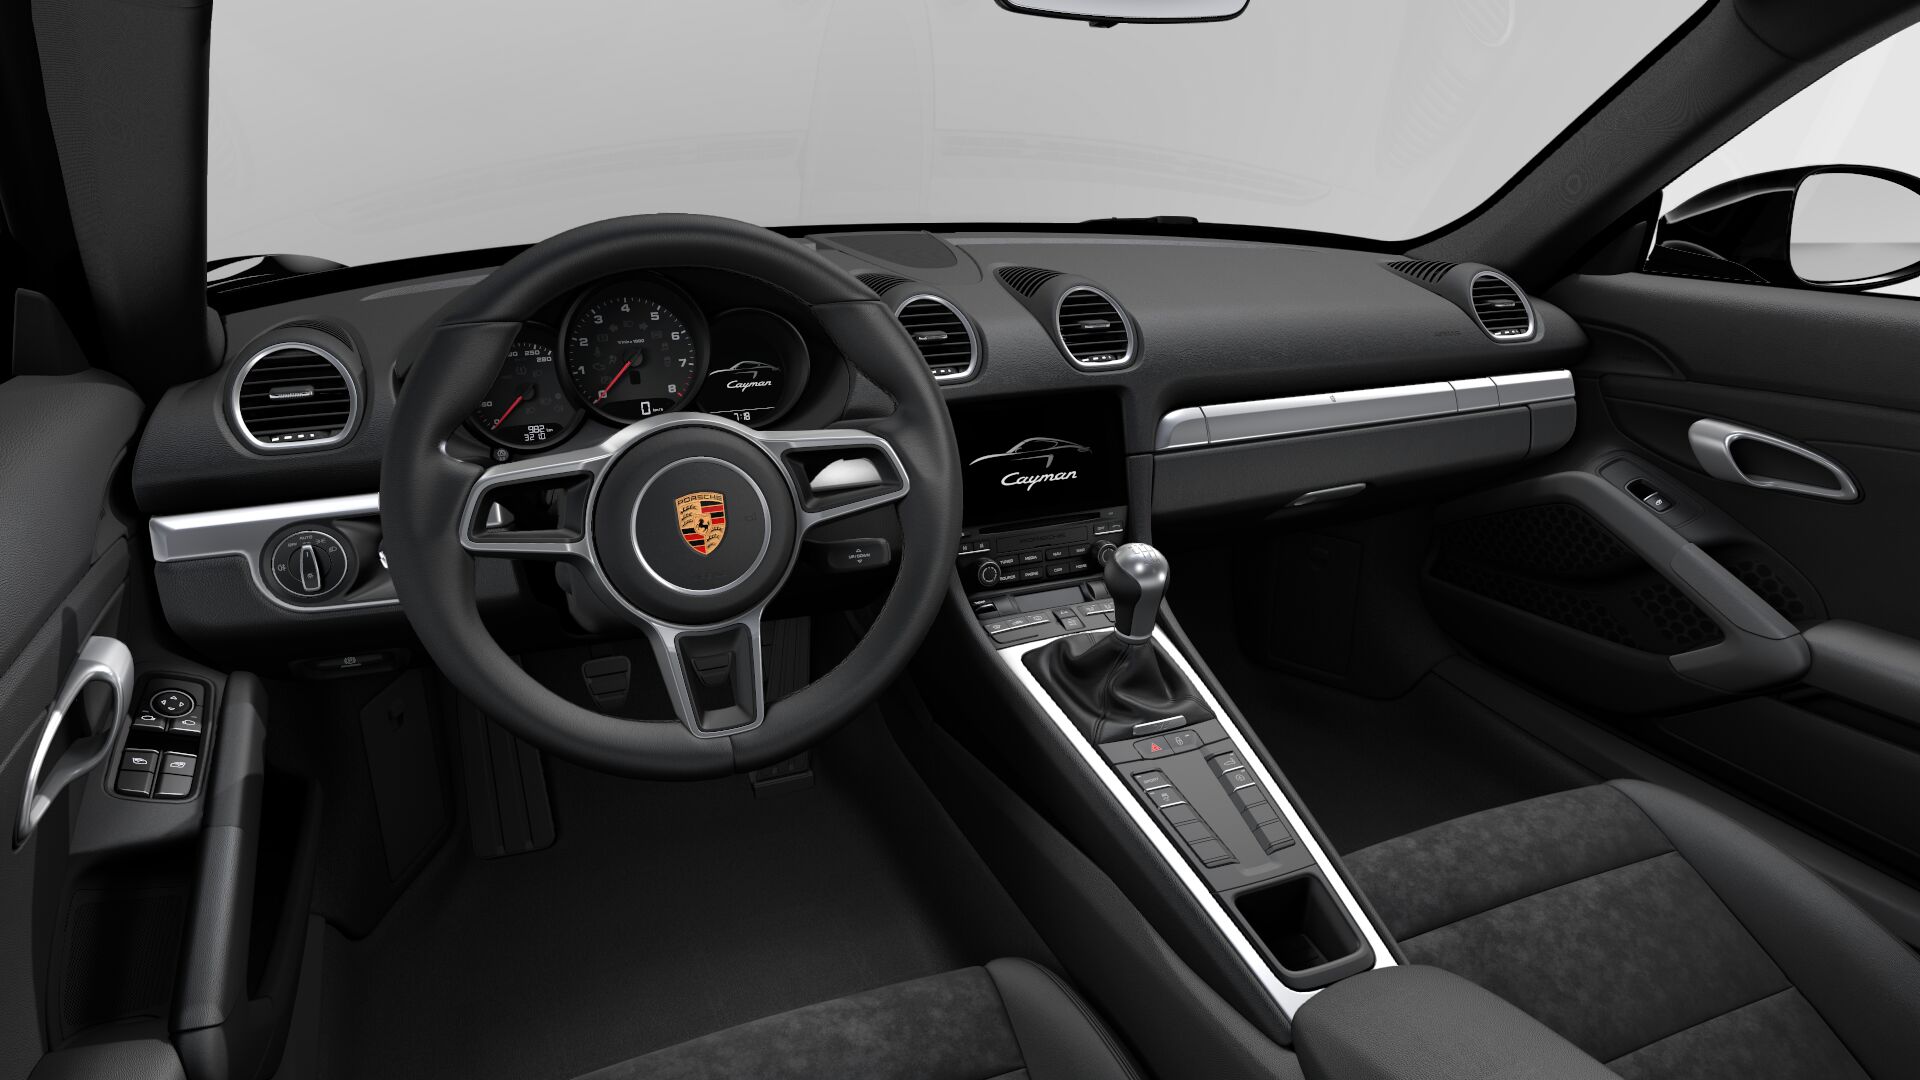 Porsche 718 Cayman S interior view